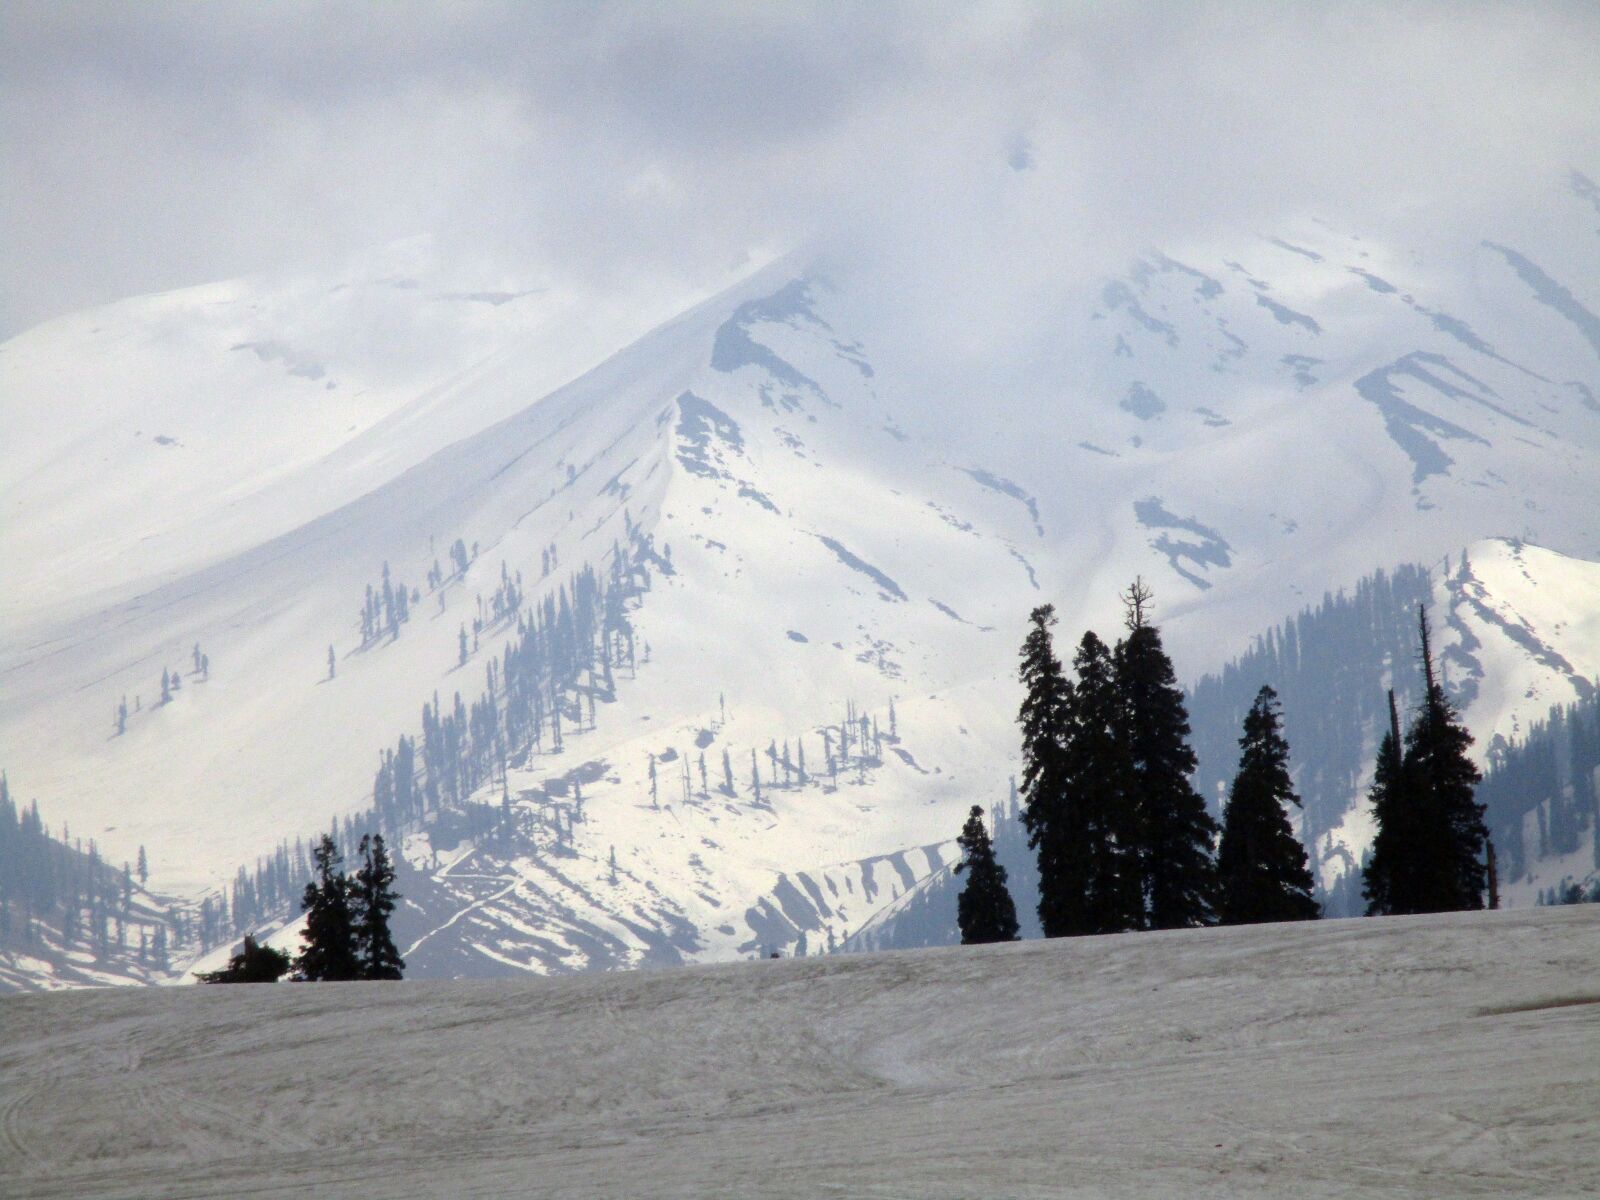 Canon PowerShot ELPH 180 (IXUS 175 / IXY 180) sample photo. Mountain, snow, white photography